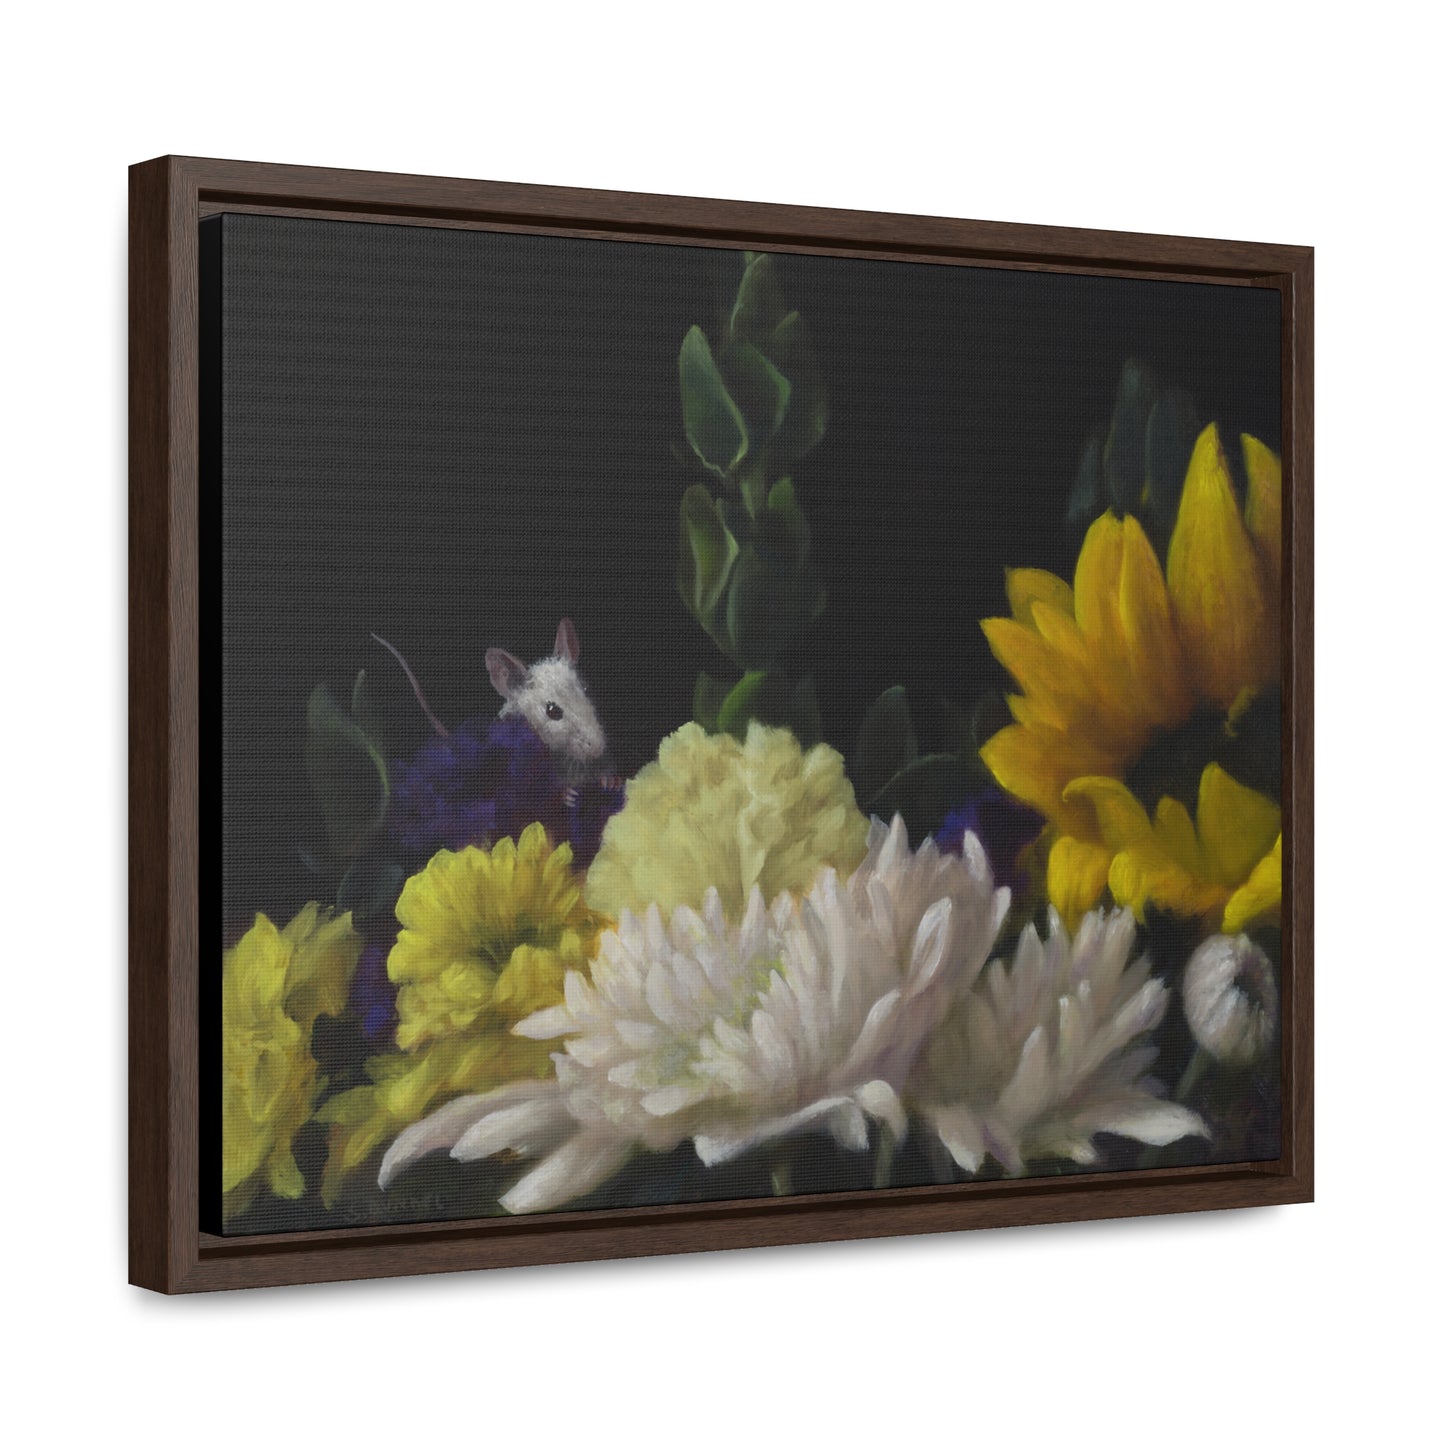 Stuart Dunkel: "Flower Power" - Framed Canvas Reproduction